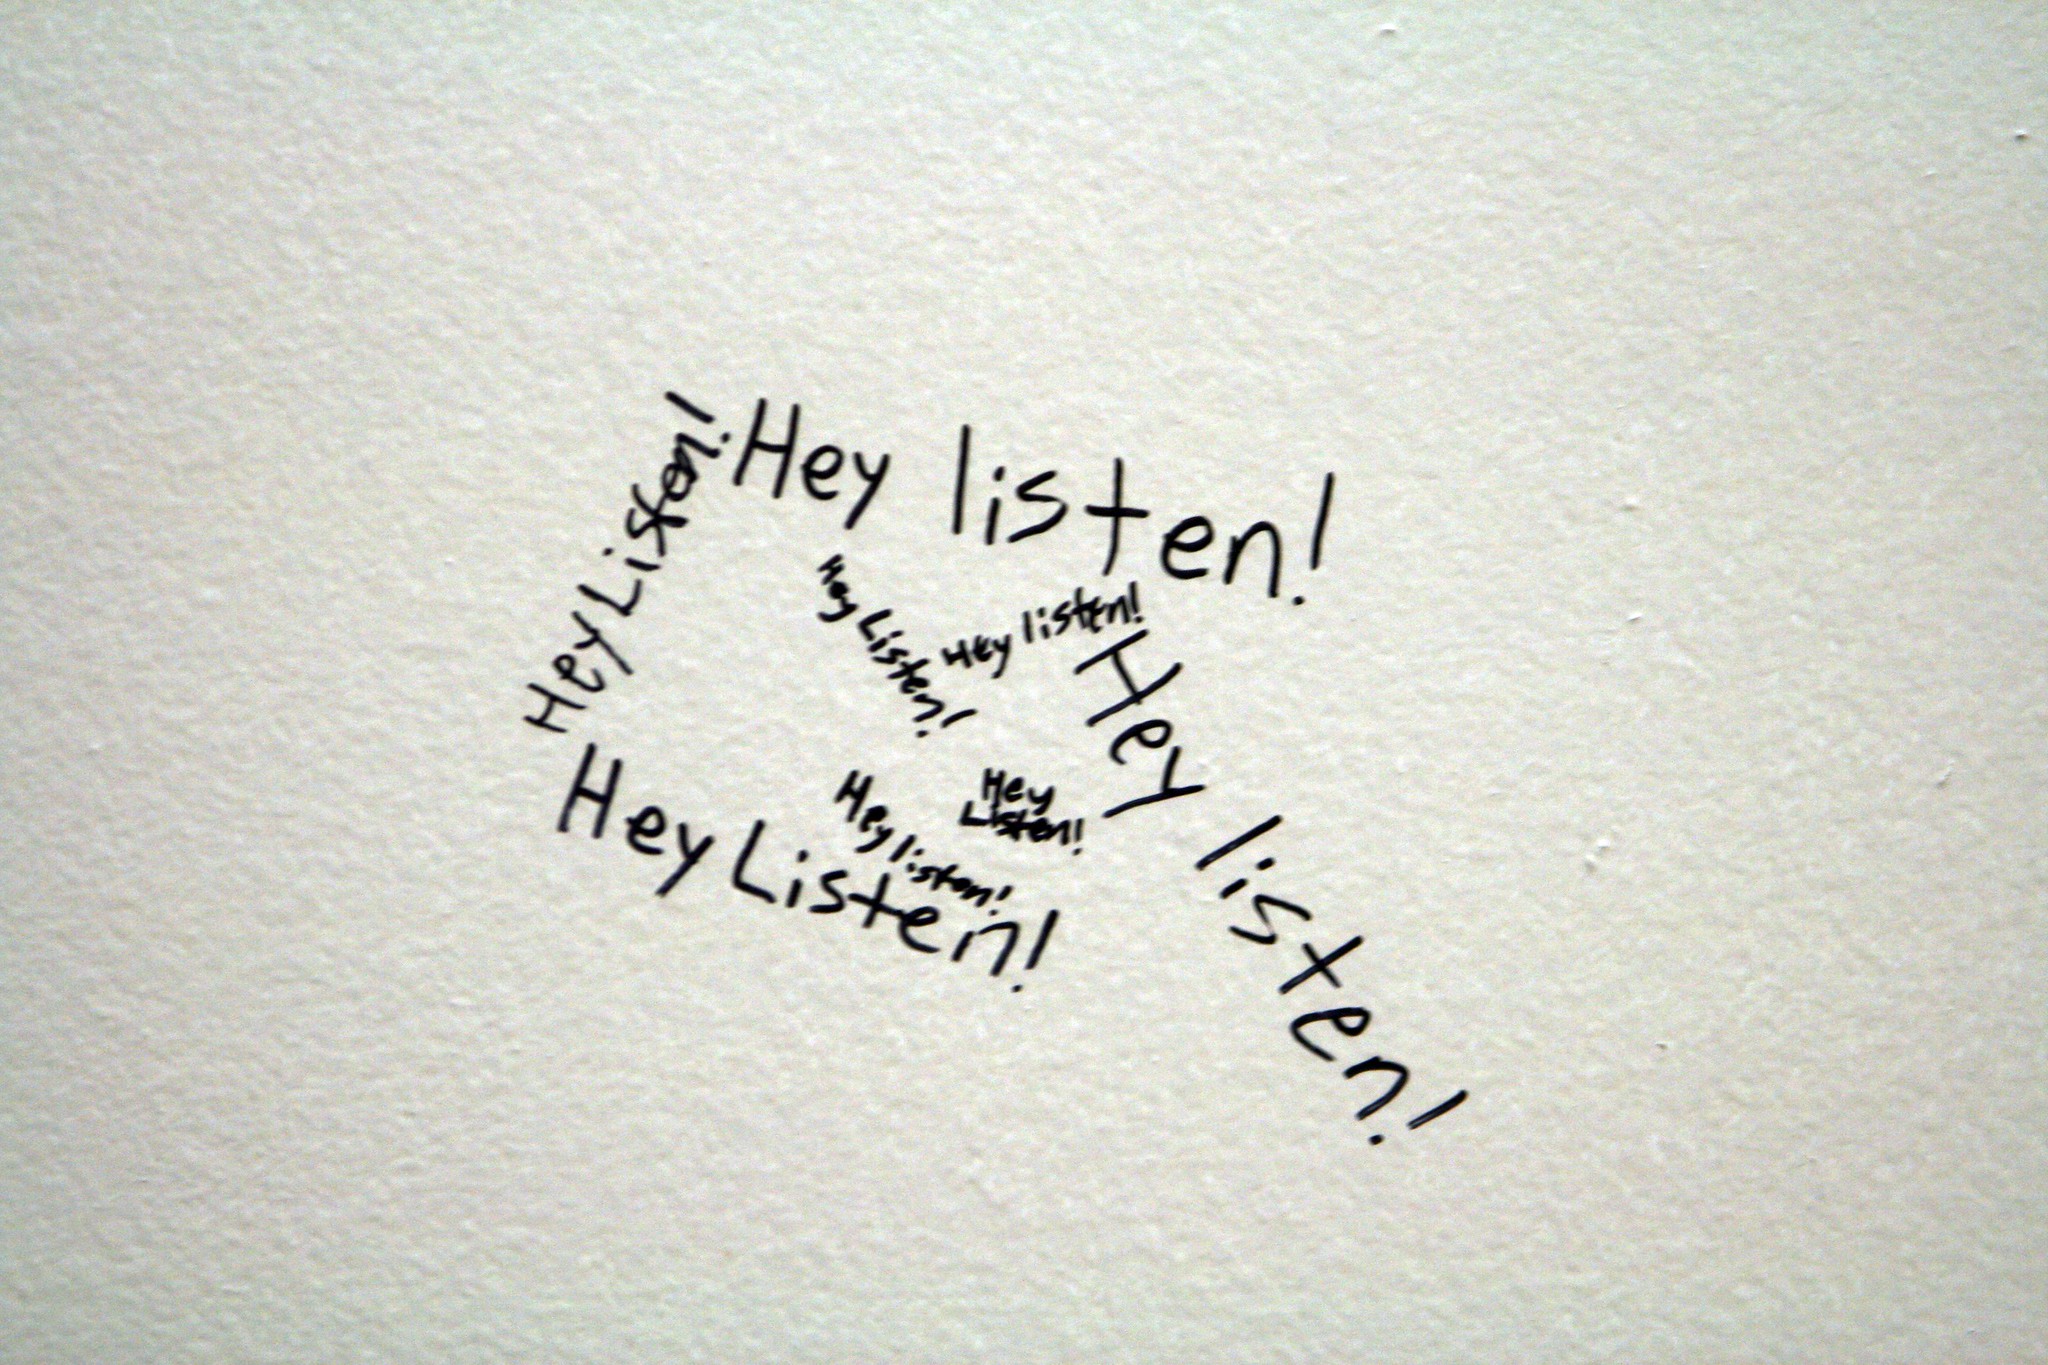 "Hey listen!" written multiple times on a wall.